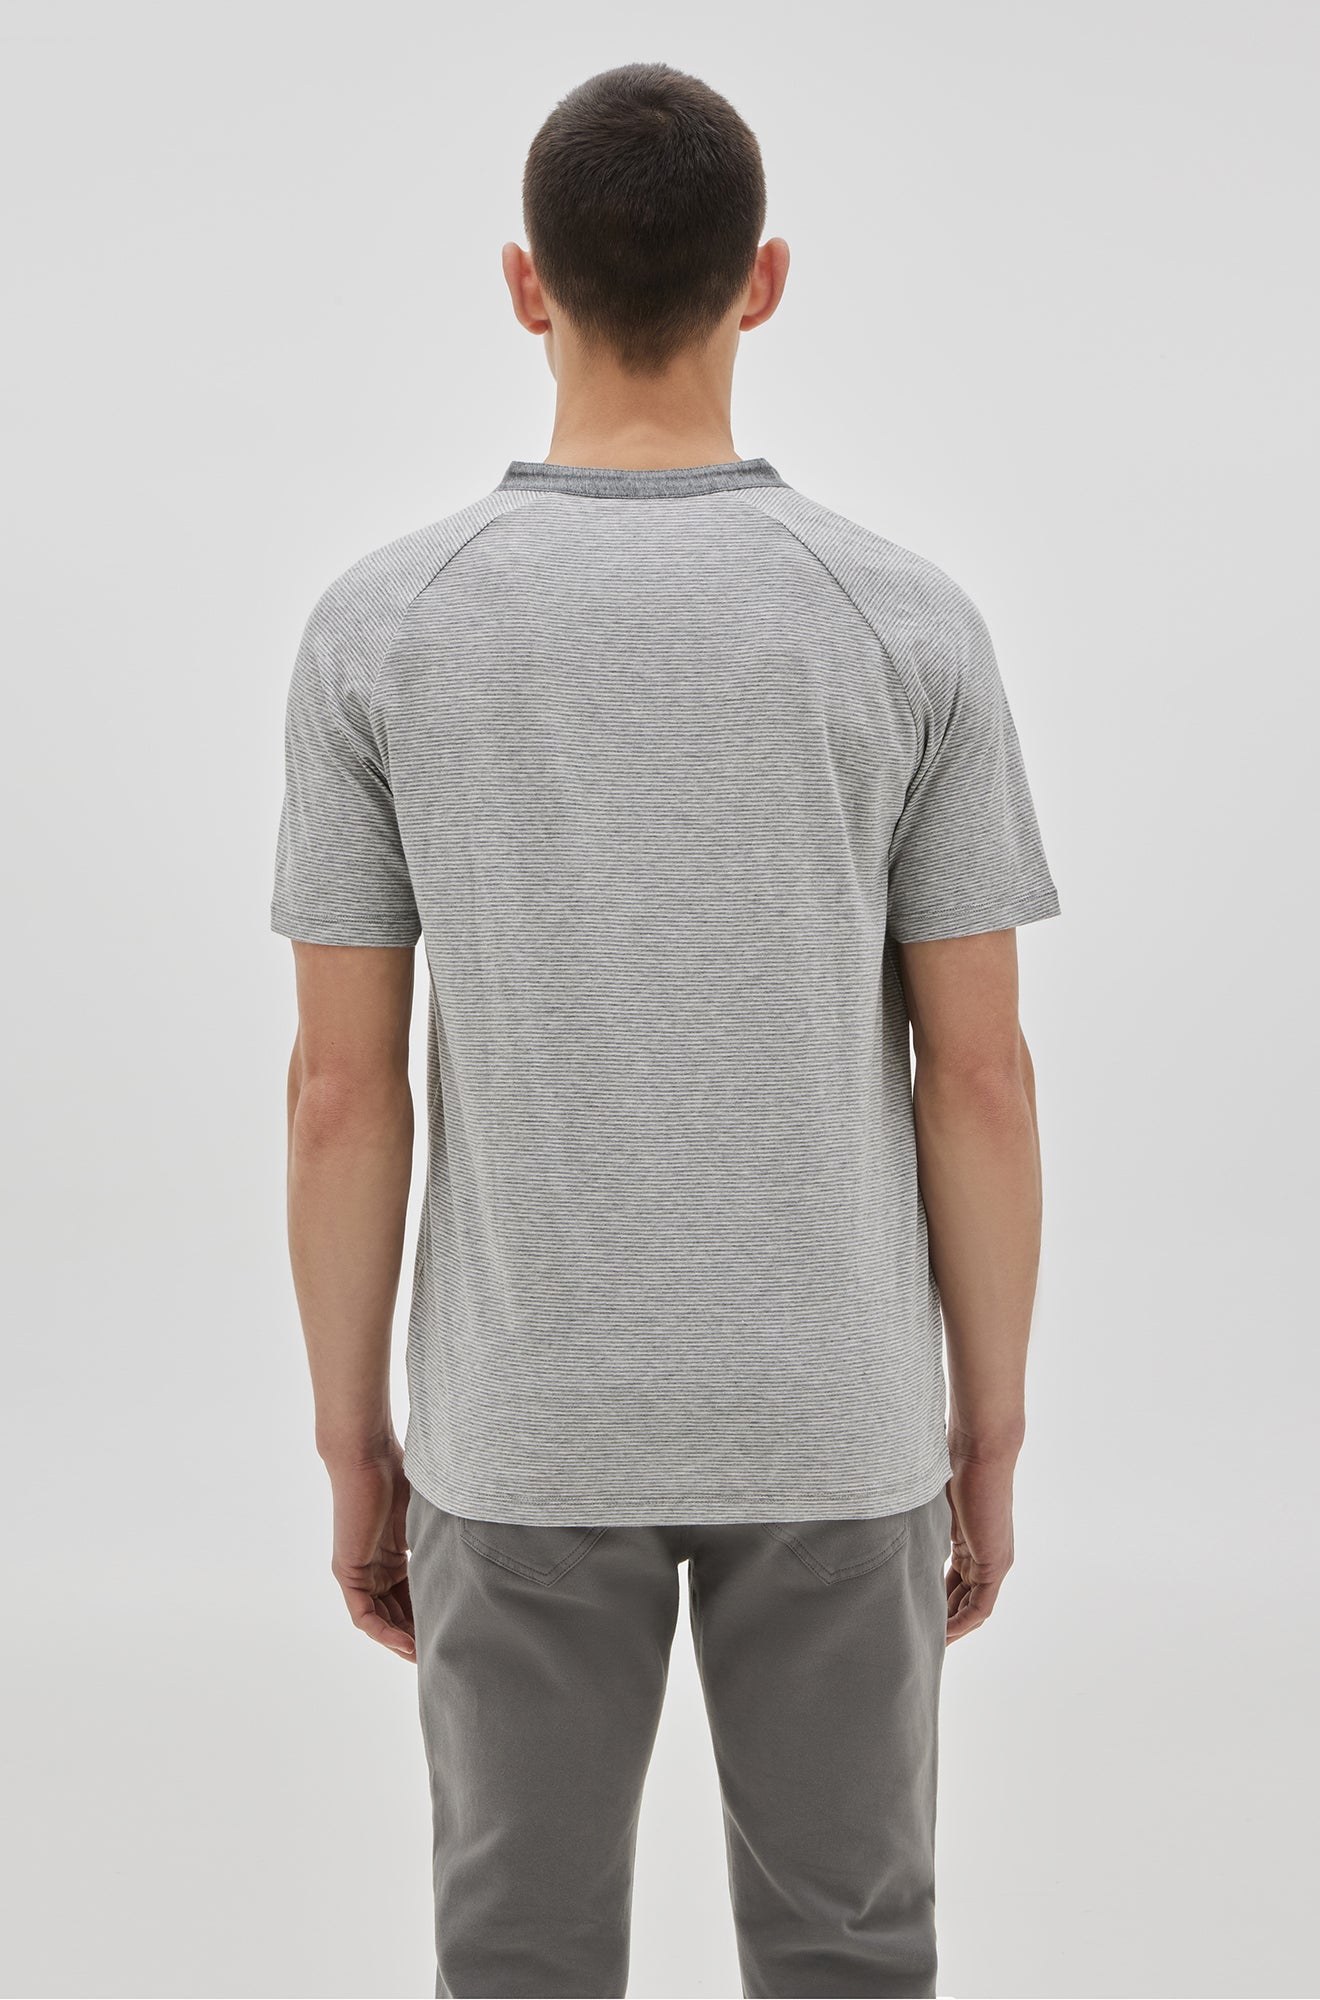 T-Shirt henley pour homme par Robert Barakett | RB21050/Cecil Gris Clair/Light Grey| Machemise.ca, vêtements mode pour hommes